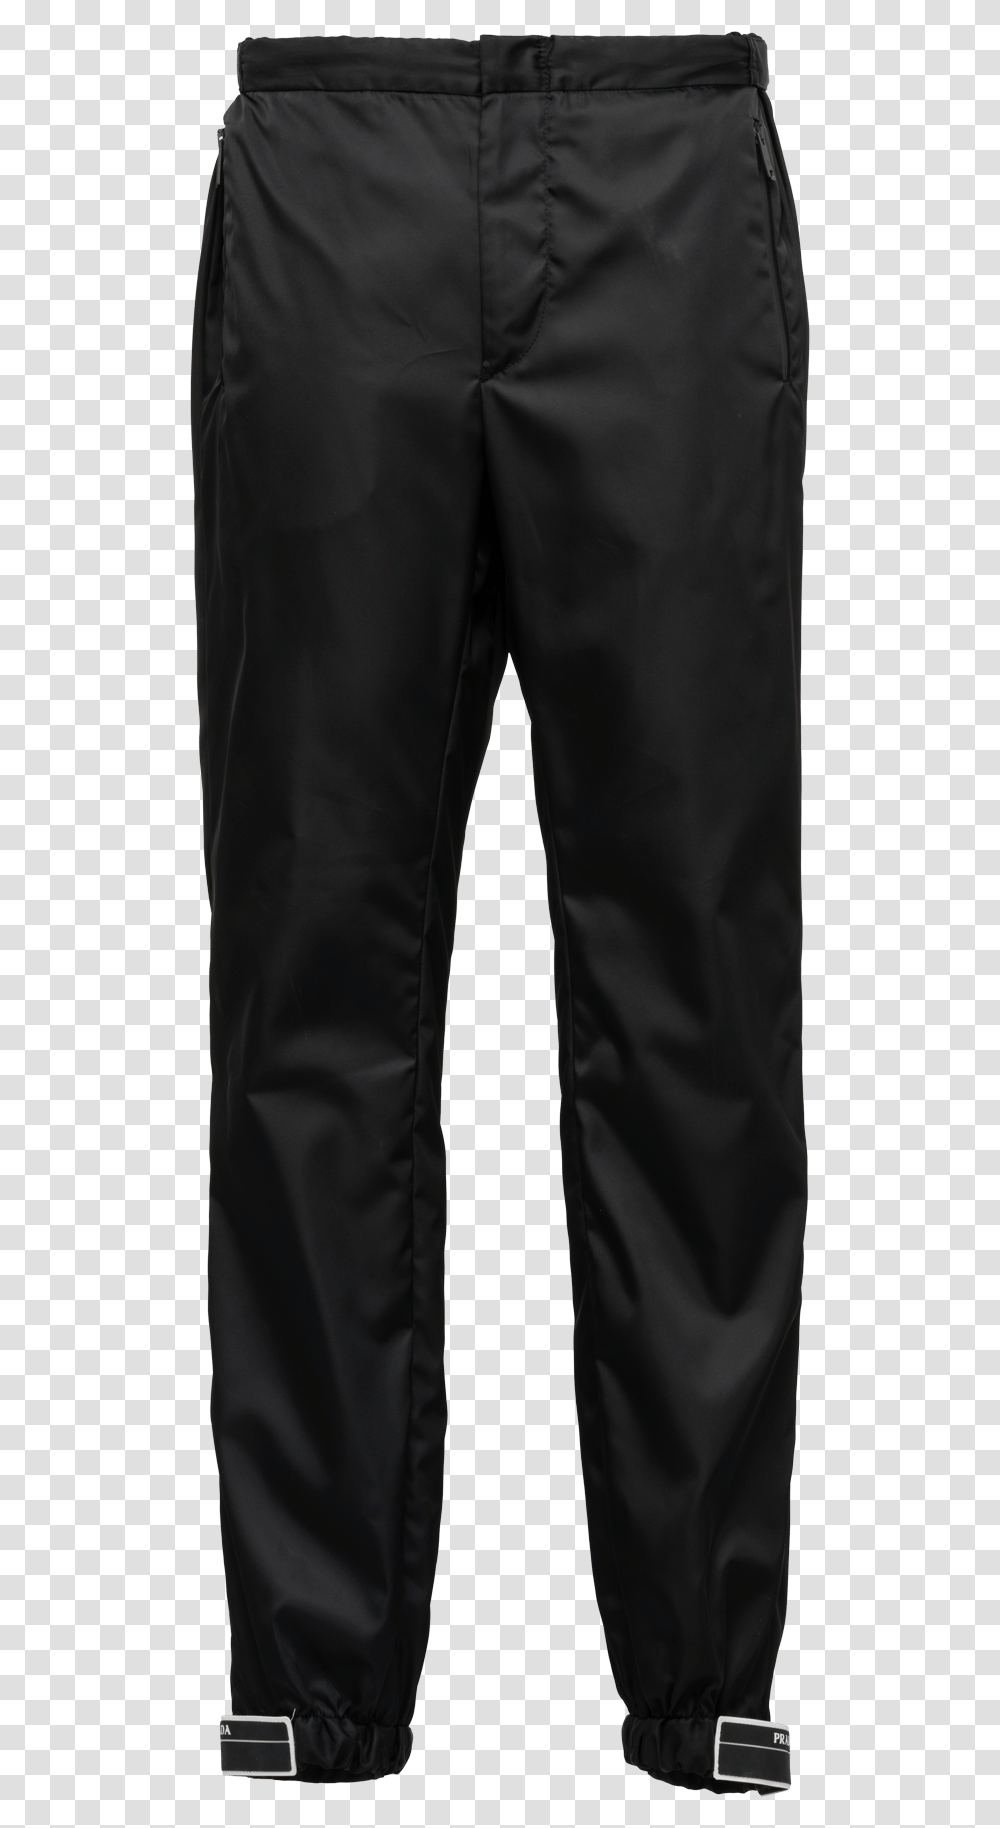 Trouser Images Black Diamond Sharp End Pants, Apparel, Jeans, Denim Transparent Png